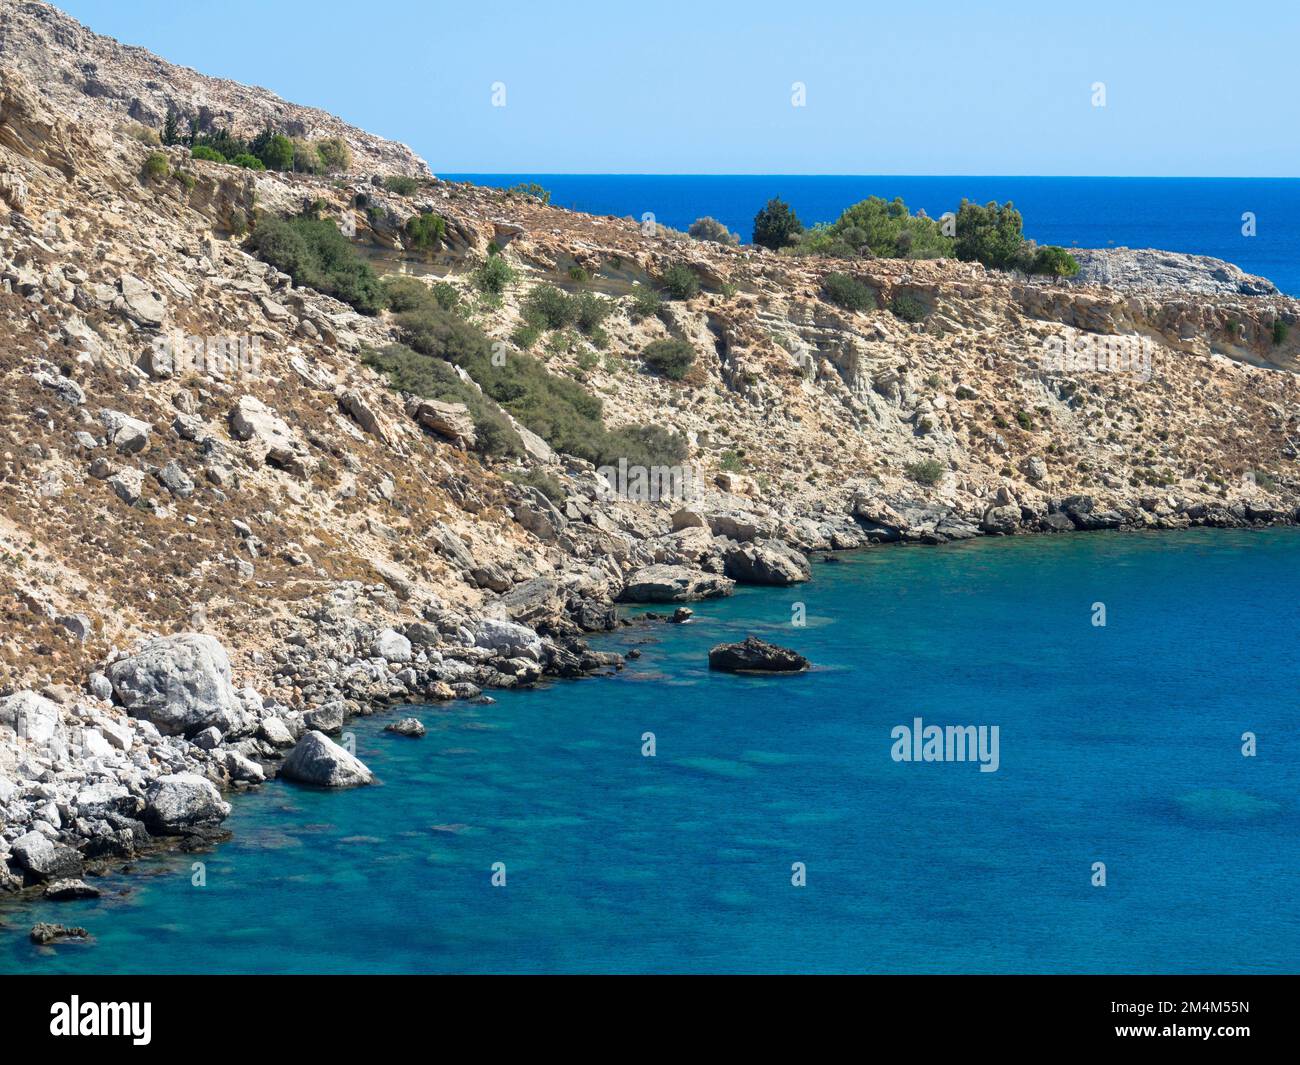 Vue panoramique sur la mer Méditerranée sur la côte rocheuse. Chaîne de montagnes avec eau turquoise. Situé près de Stegna, Archangelos, Rhodes, Grèce Banque D'Images